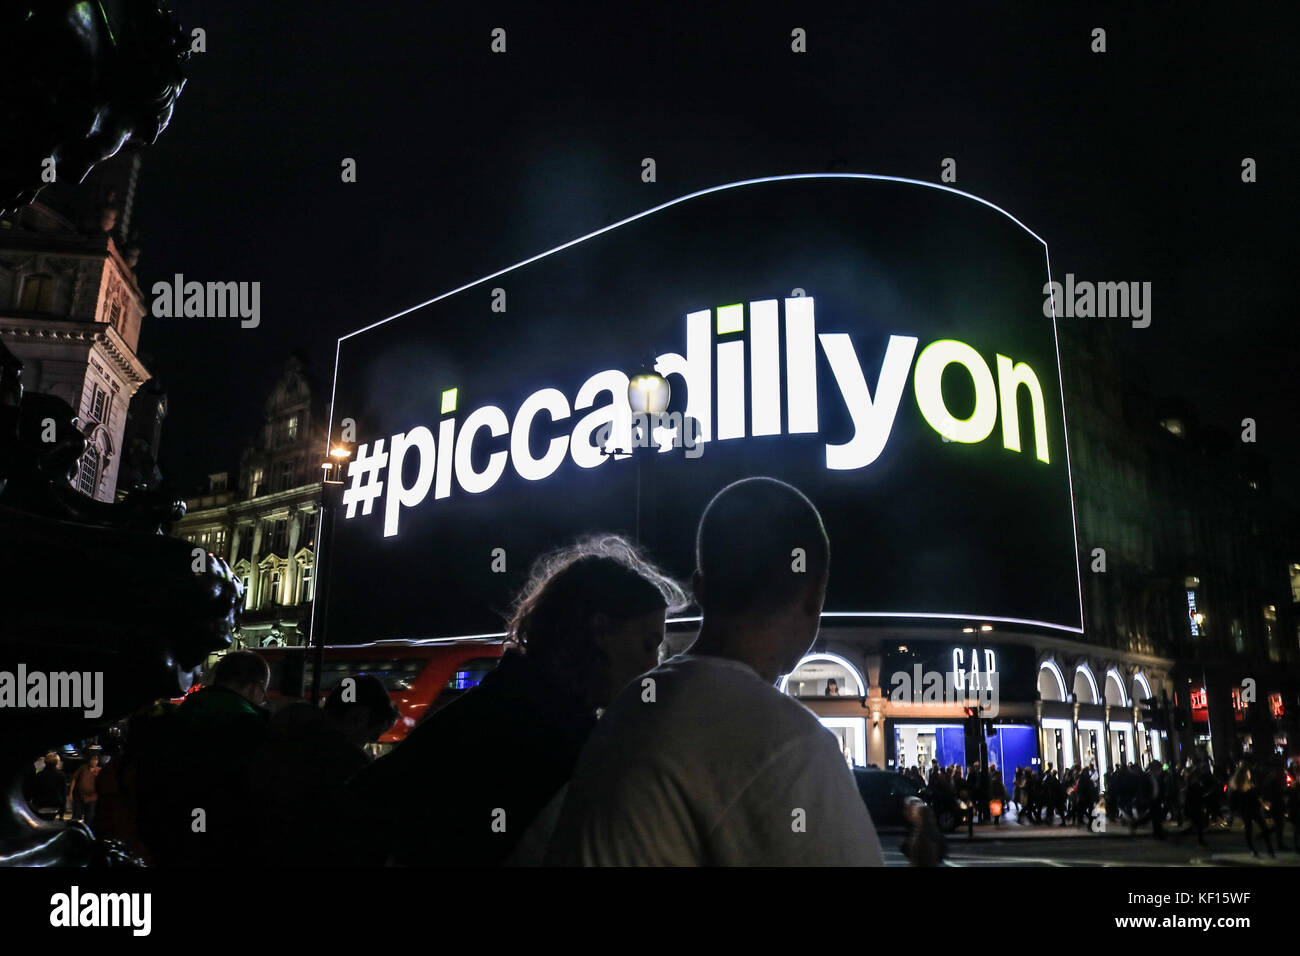 Londres, Reino Unido el 24 de octubre de 2017. El mundialmente famoso Piccadilly luces se vuelve a conectar, después de someterse a un trabajo de renovación de nueve meses. La nueva pantalla de publicidad gigante se convertirá en el más grande, única digital de ultra-alta definición pantalla curva mide 8,500 pies cuadrados (790 metros cuadrados) en Europa Foto de stock